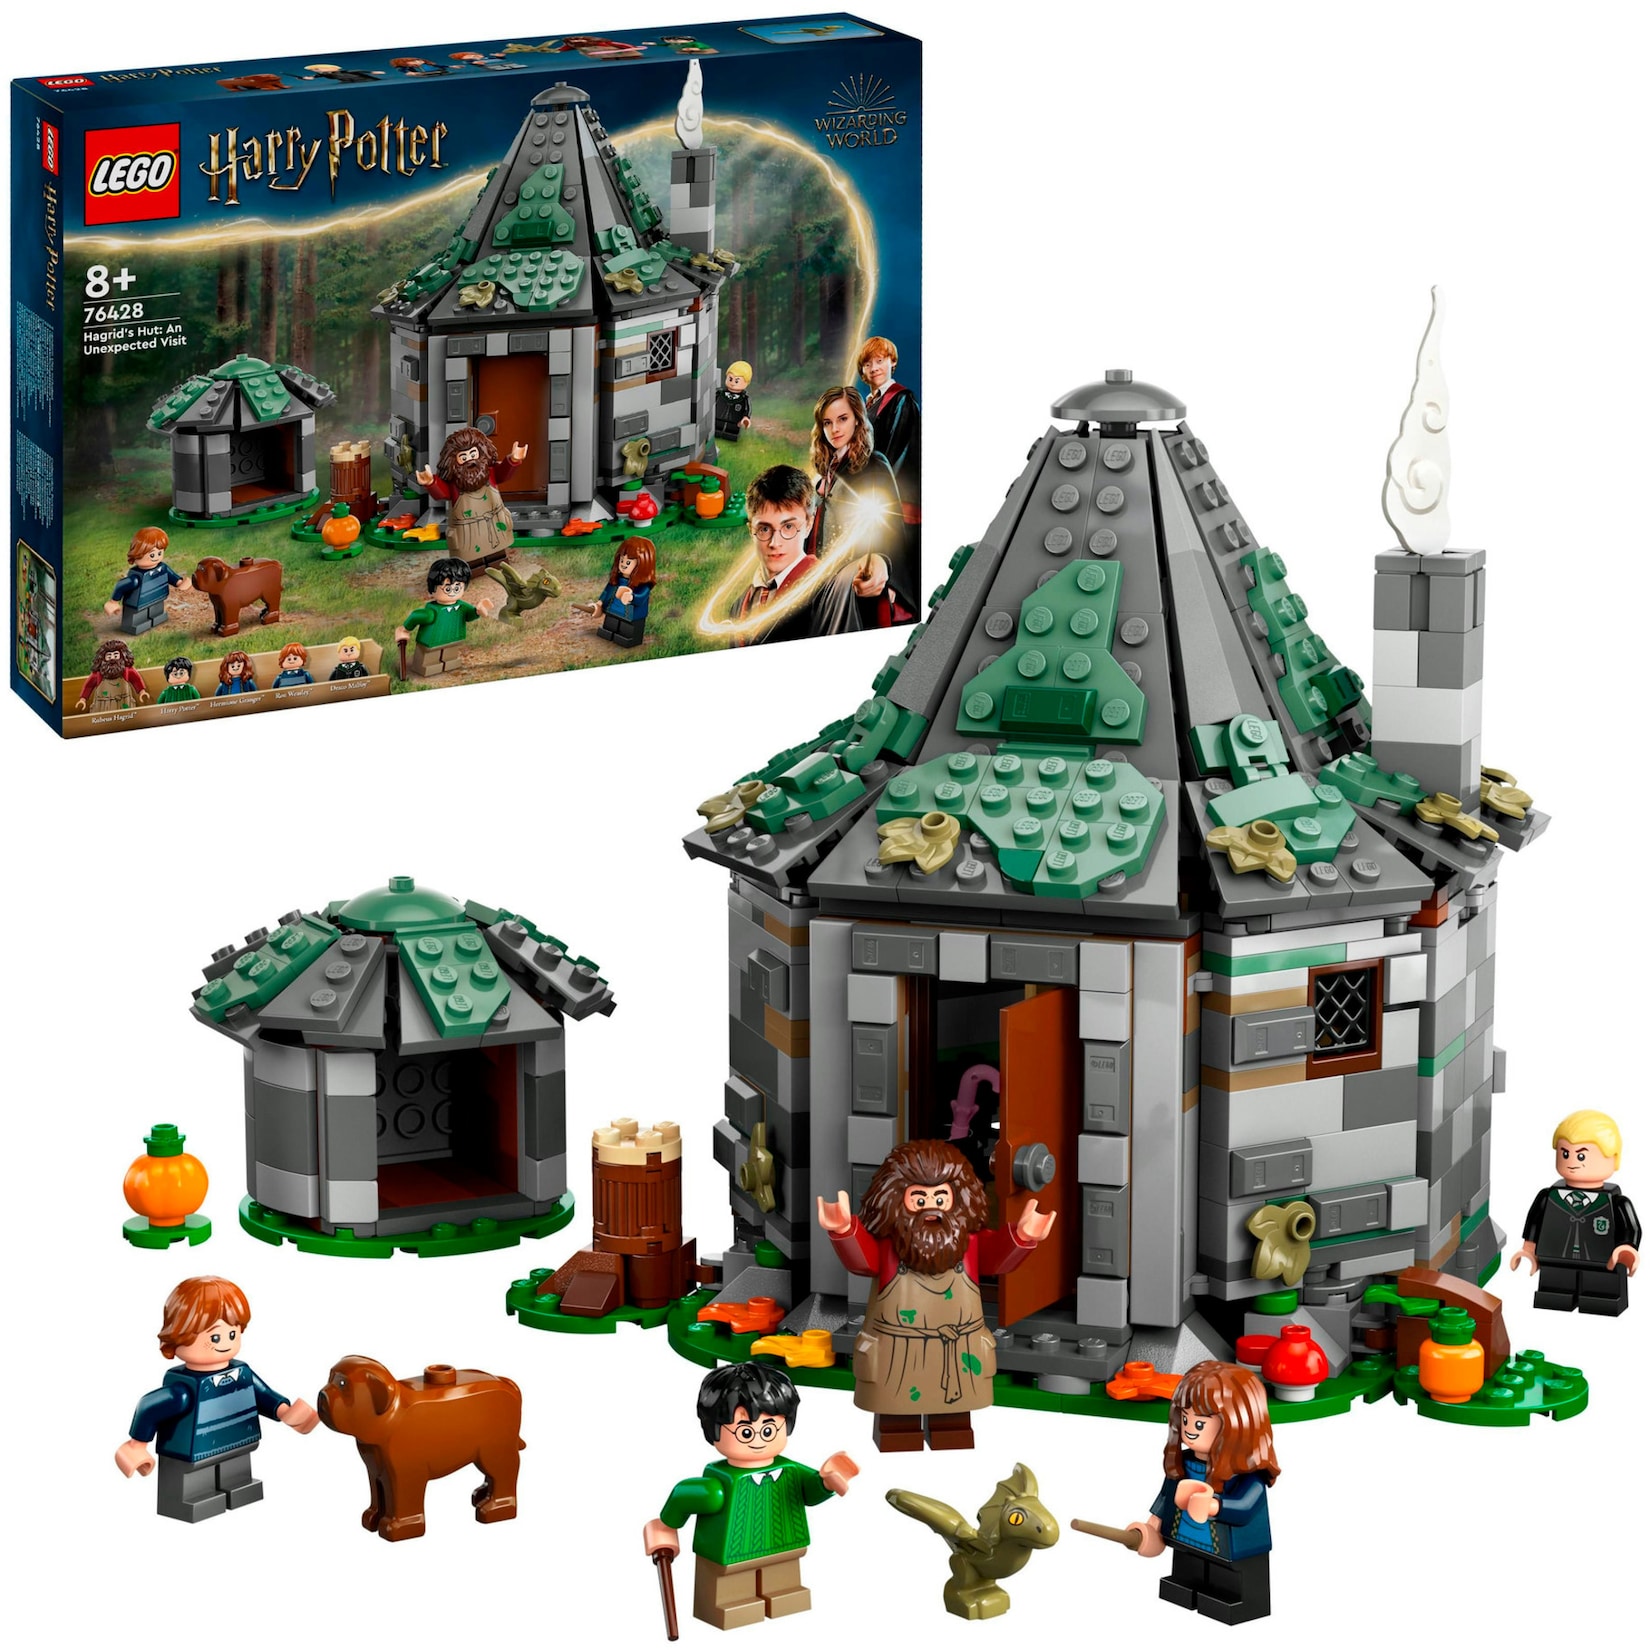 LEGO Konstruktionsspielzeug Harry Potter Hagrids Hütte: Ein unerwarteter Besuch